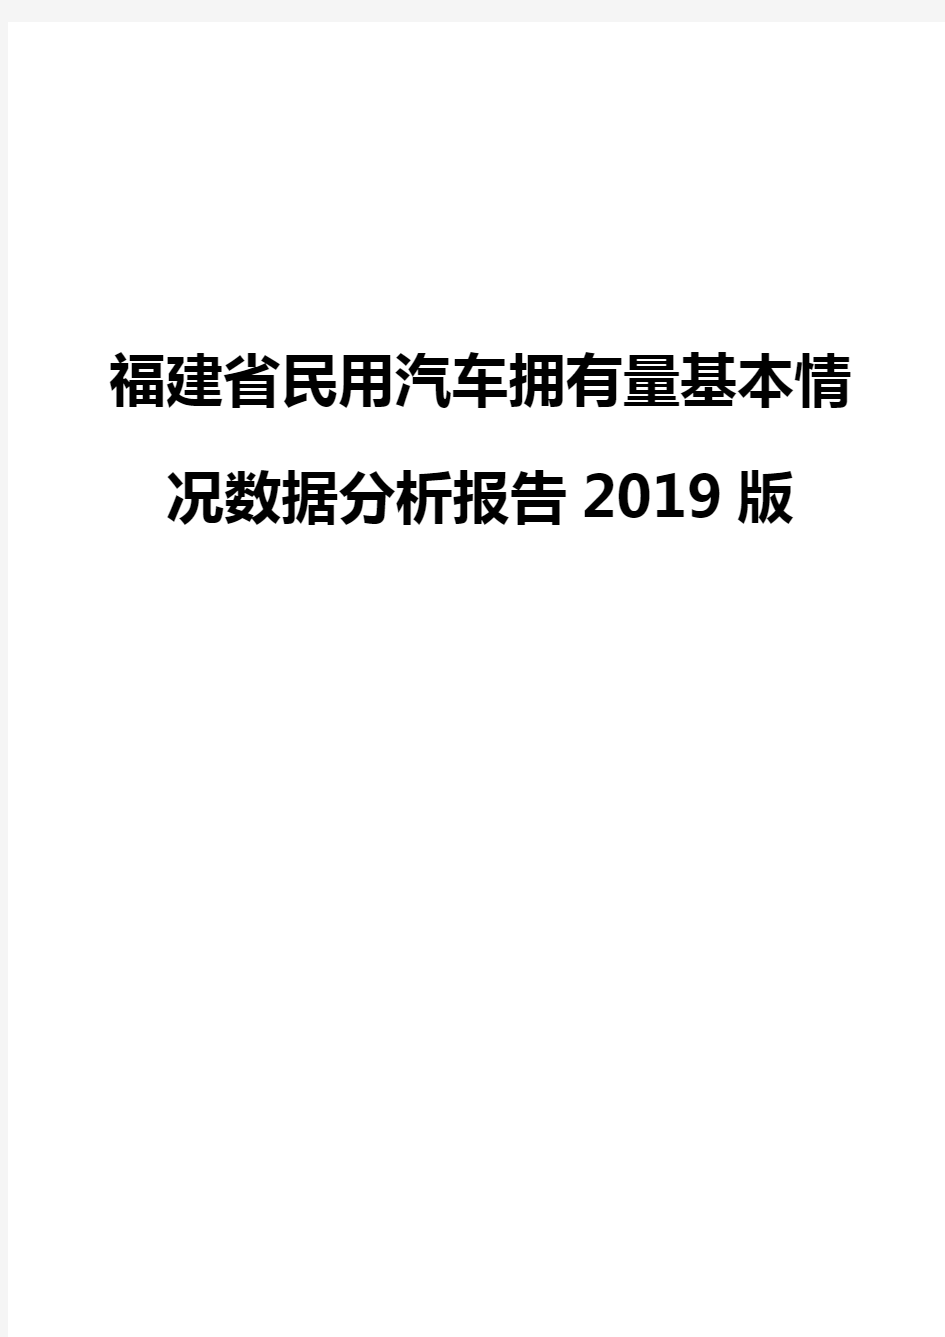 福建省民用汽车拥有量基本情况数据分析报告2019版